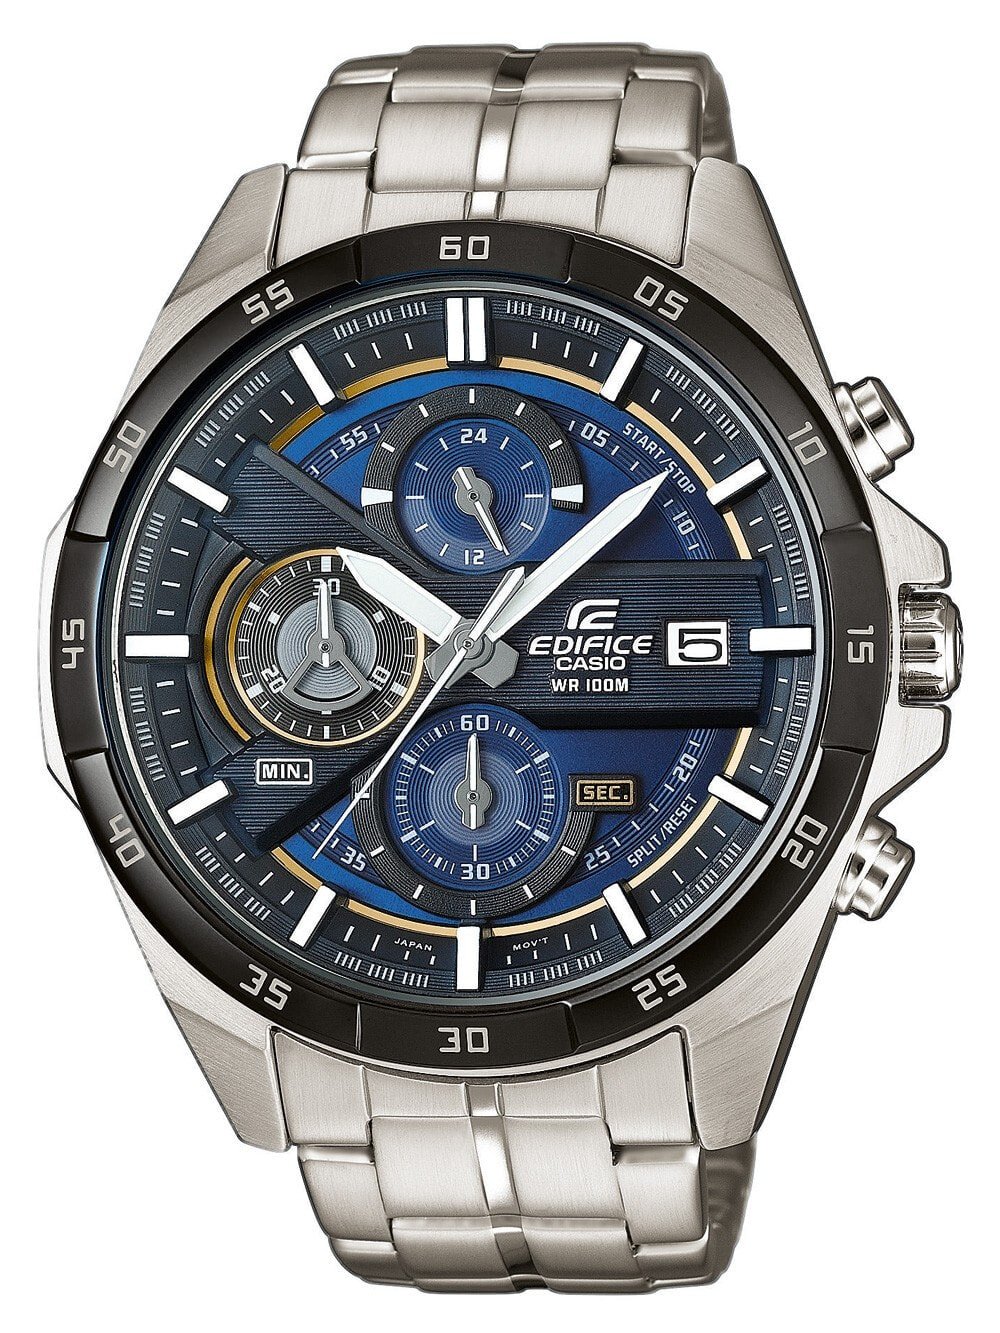 Мужские наручные часы с серебряным браслетом CASIO EFR-556DB-2AVUEF EDIFICE Chronograph 46mm 10 ATM